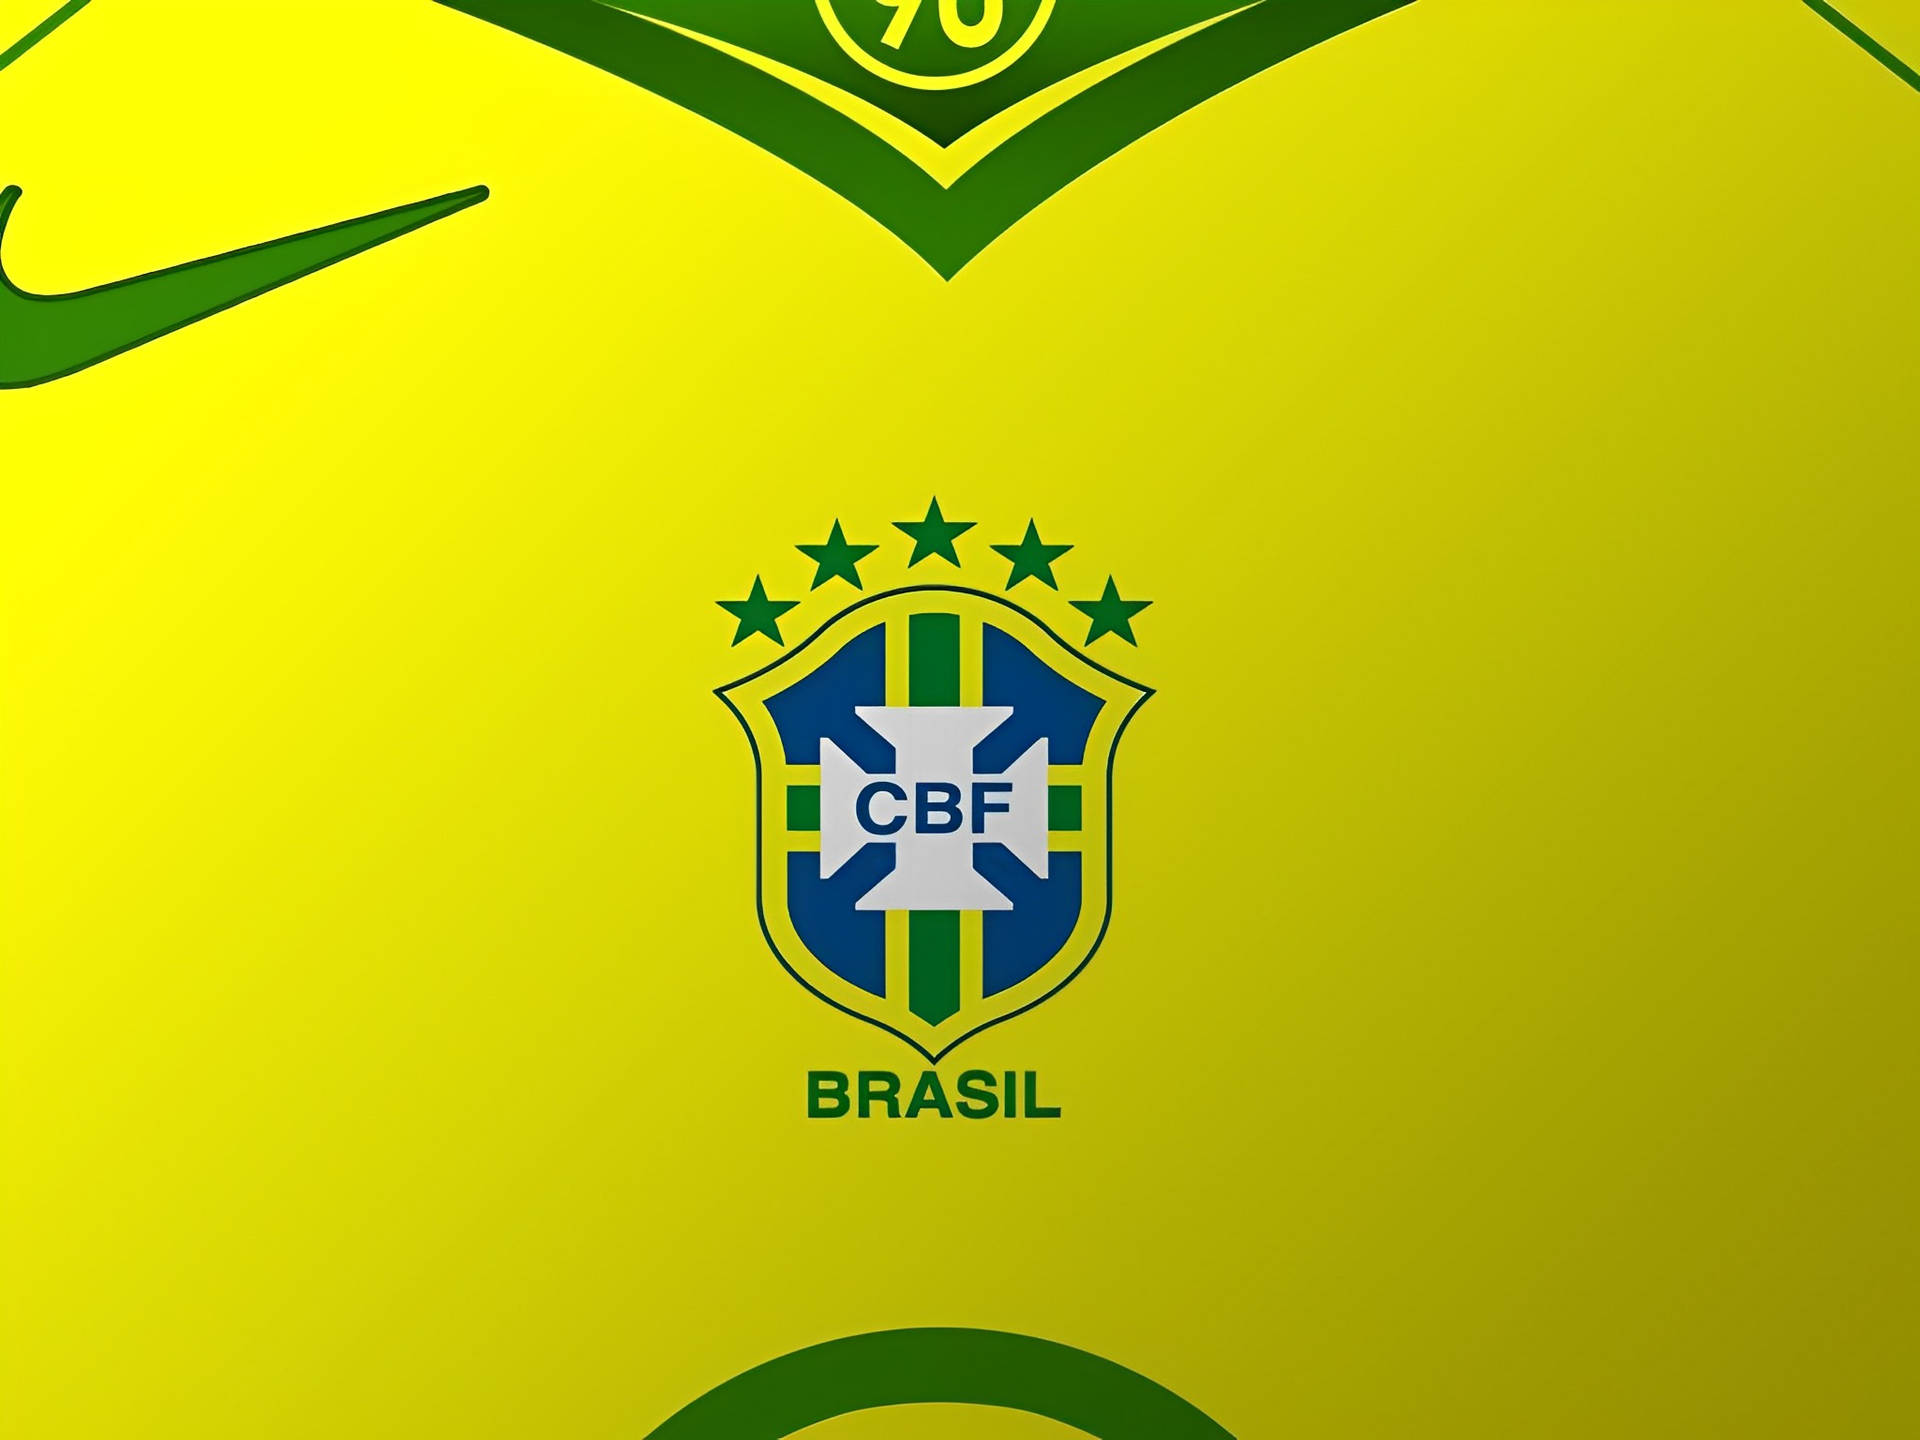 Brasilianischenationalmannschaft Cbf-logo Wallpaper